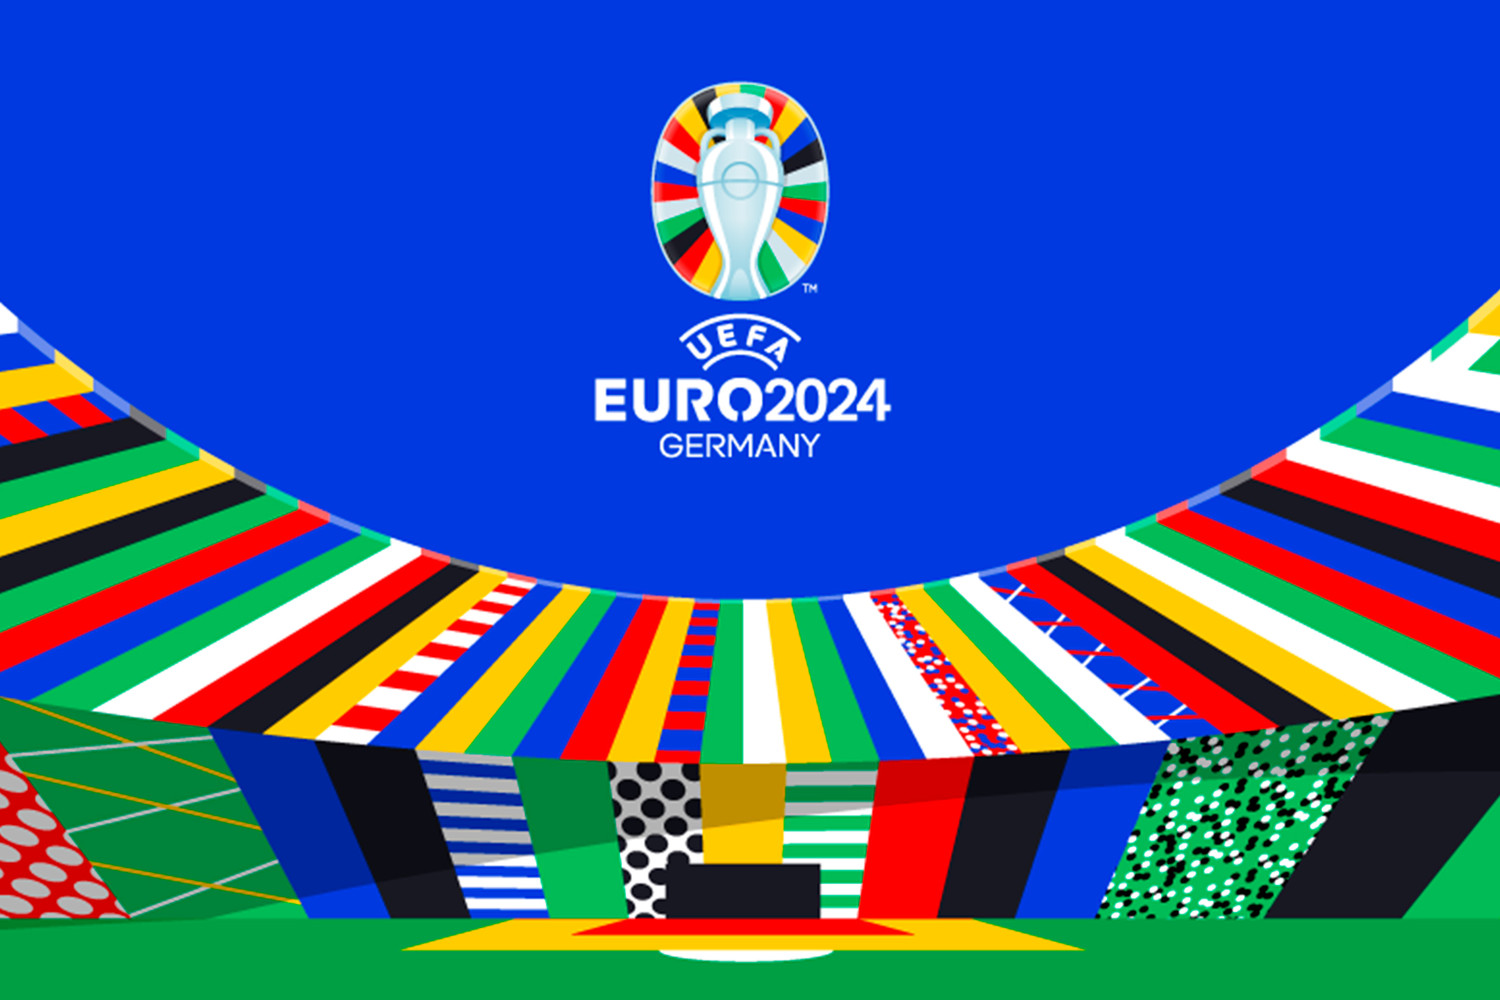 Сборная России пошутила над представленным логотипом Евро-2024